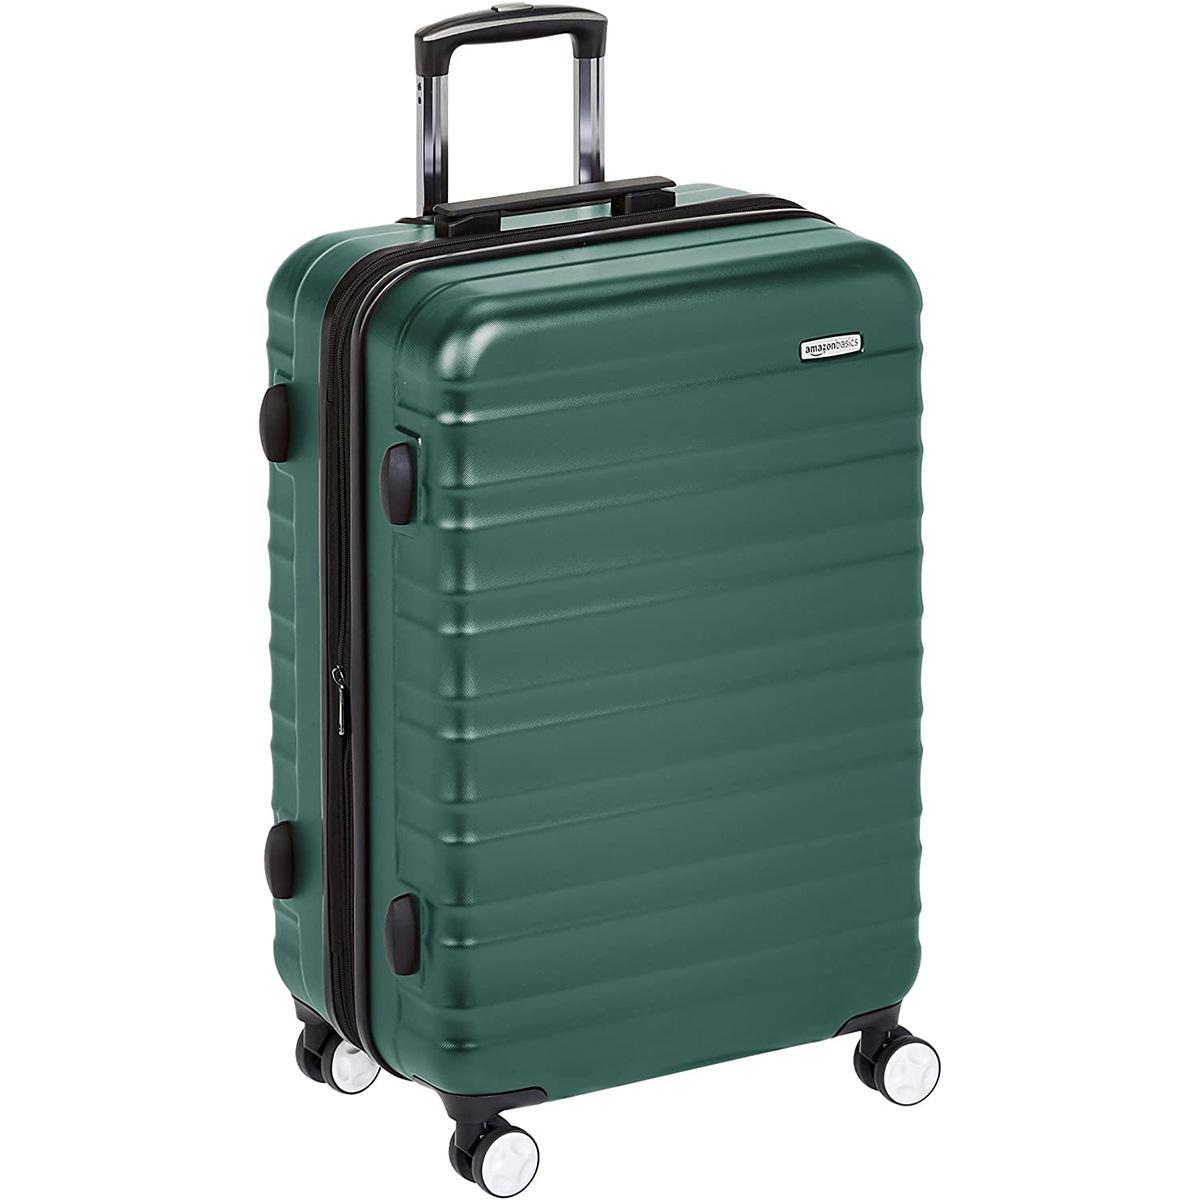 AmazonBasics Premium Hardside Spinner Suitcase Luggage for $32.99 Shipped